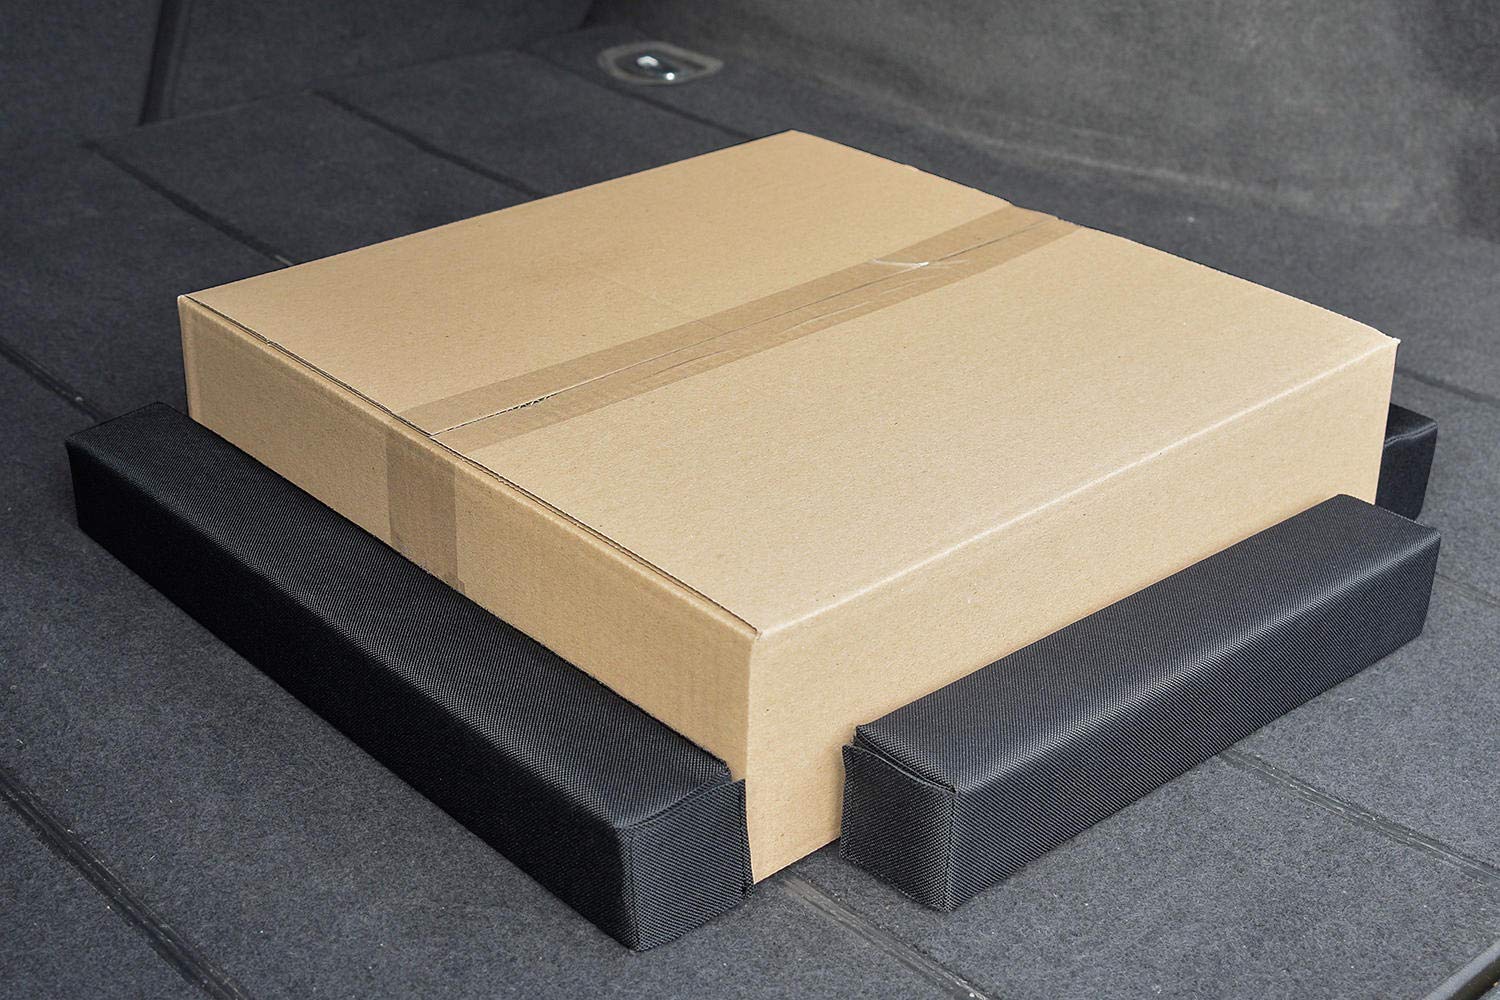 Zakschneider Organizer - Easy Stopper - Perfekter Schutz von beweglichen Gegenständen, die im Kofferraum transportiert Werden von Zakschneider